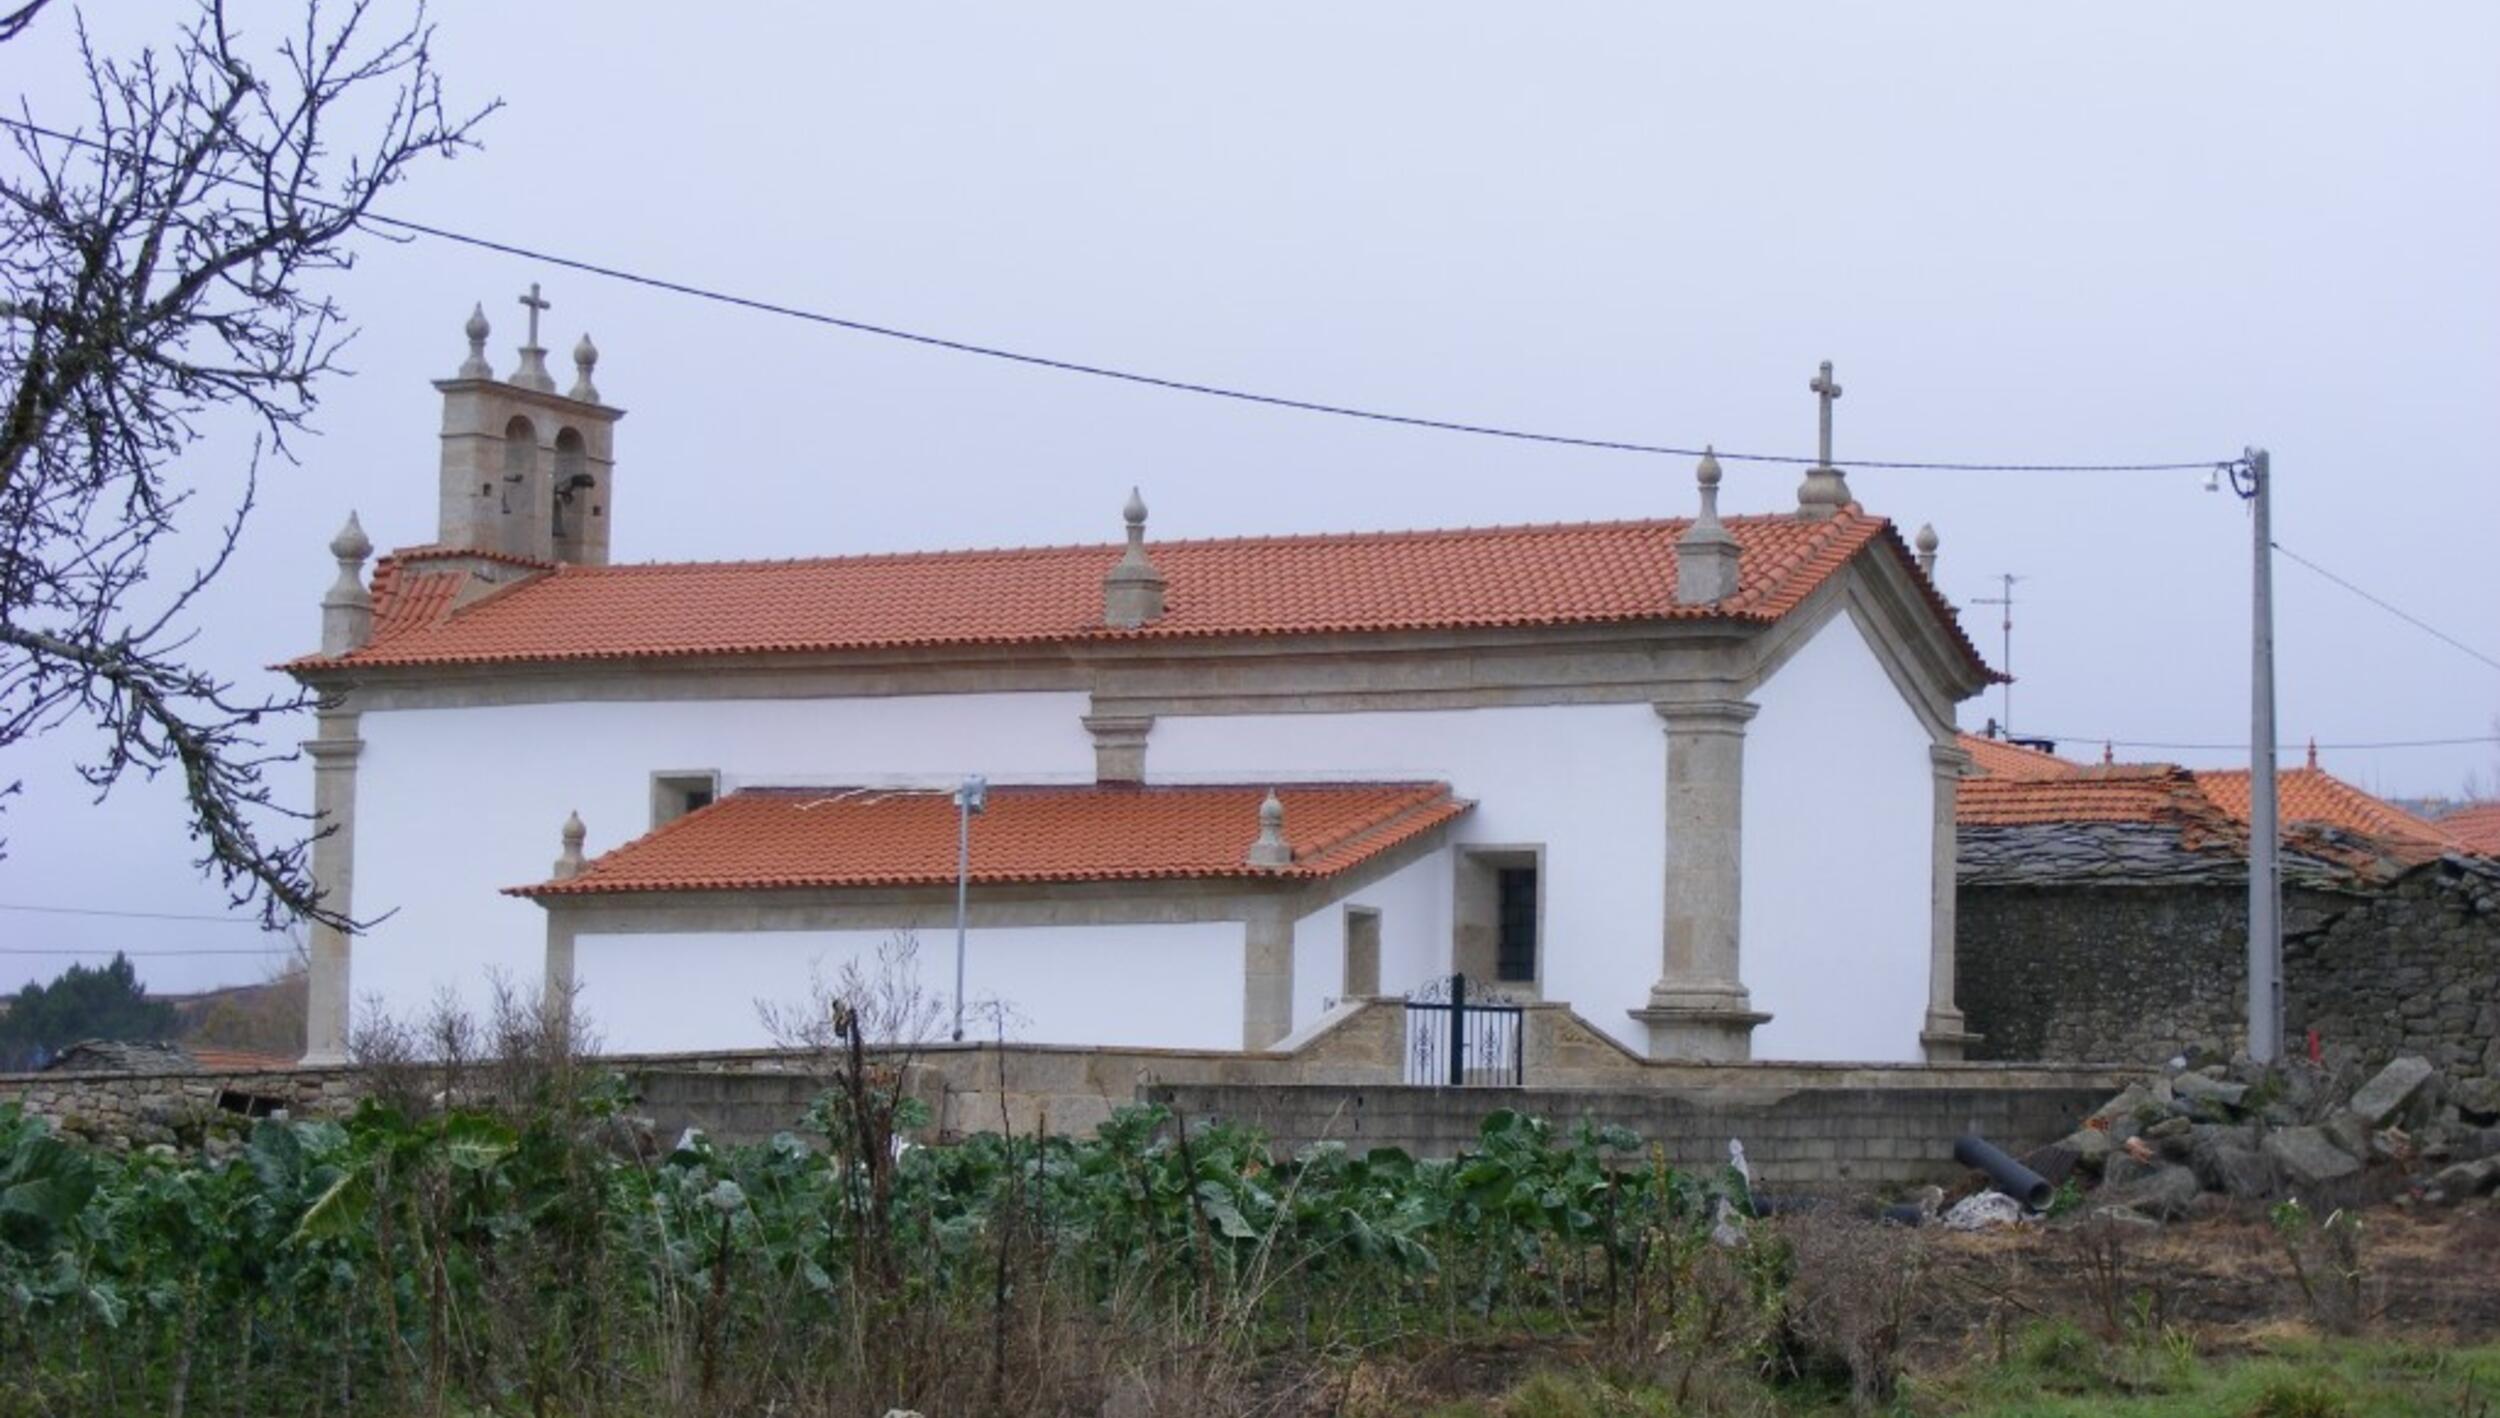 Igreja Matriz de Pinheiro Novo / Igreja de Nossa Senhora Rainha